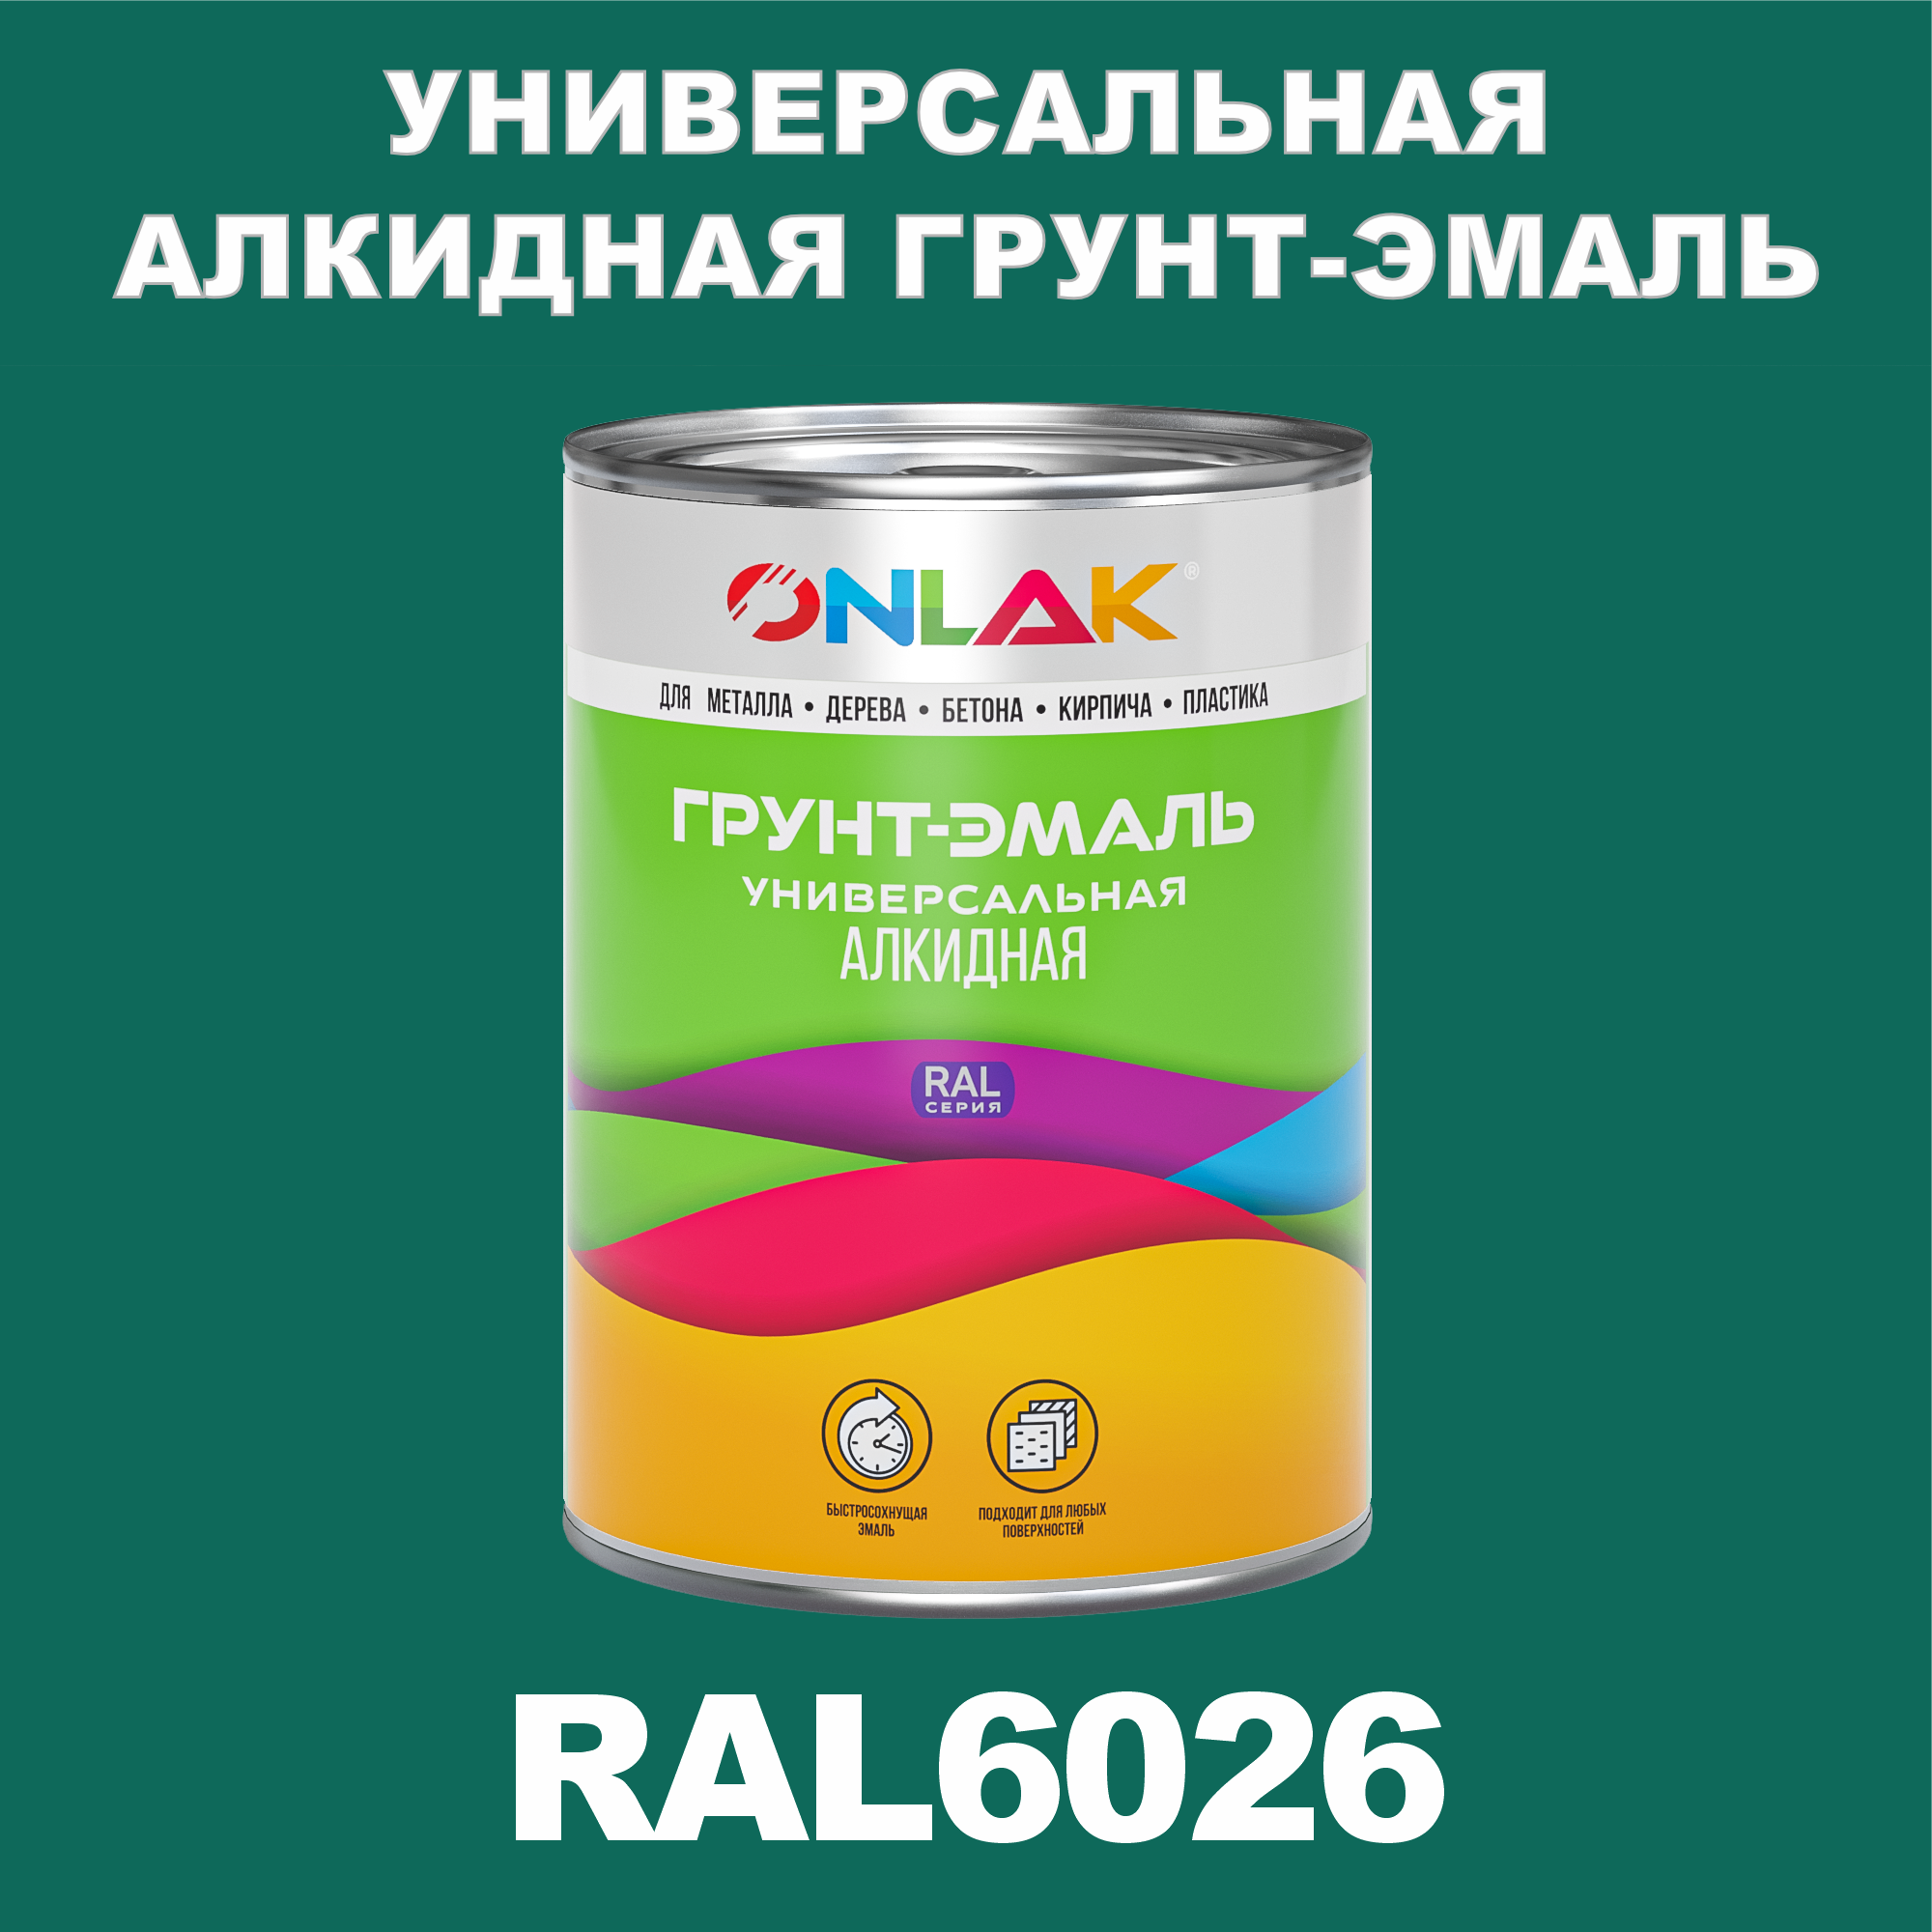 Грунт-эмаль ONLAK 1К RAL6026 антикоррозионная алкидная по металлу по ржавчине 1 кг грунт эмаль yollo по ржавчине алкидная зеленая 0 9 кг